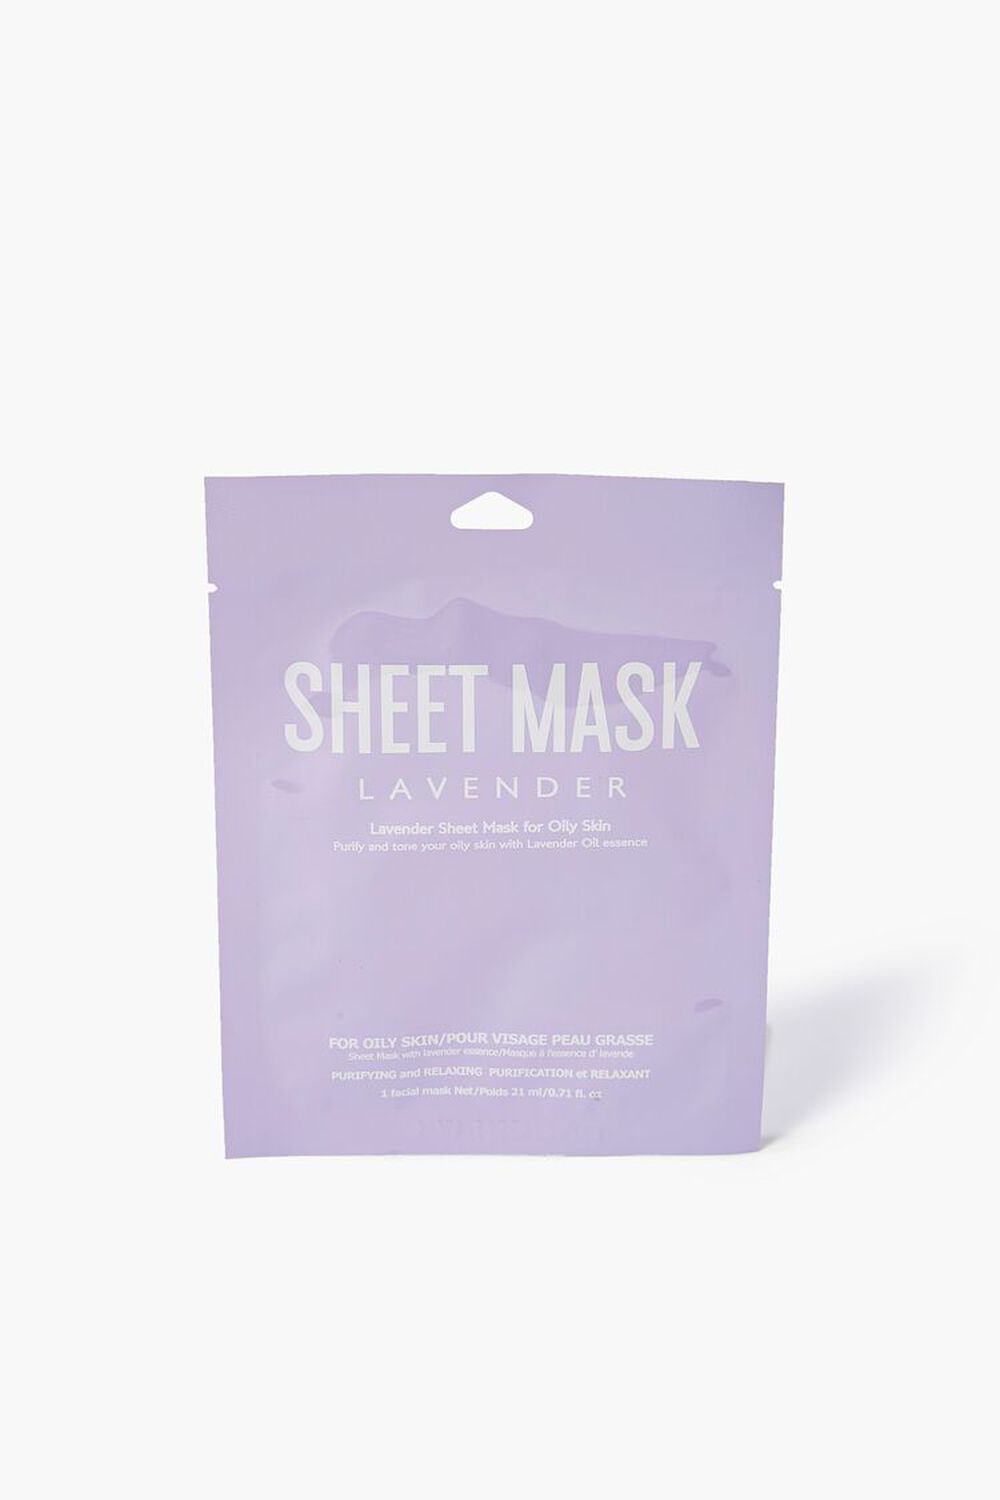 LAVENDER Lavender Face Sheet Mask, image 1